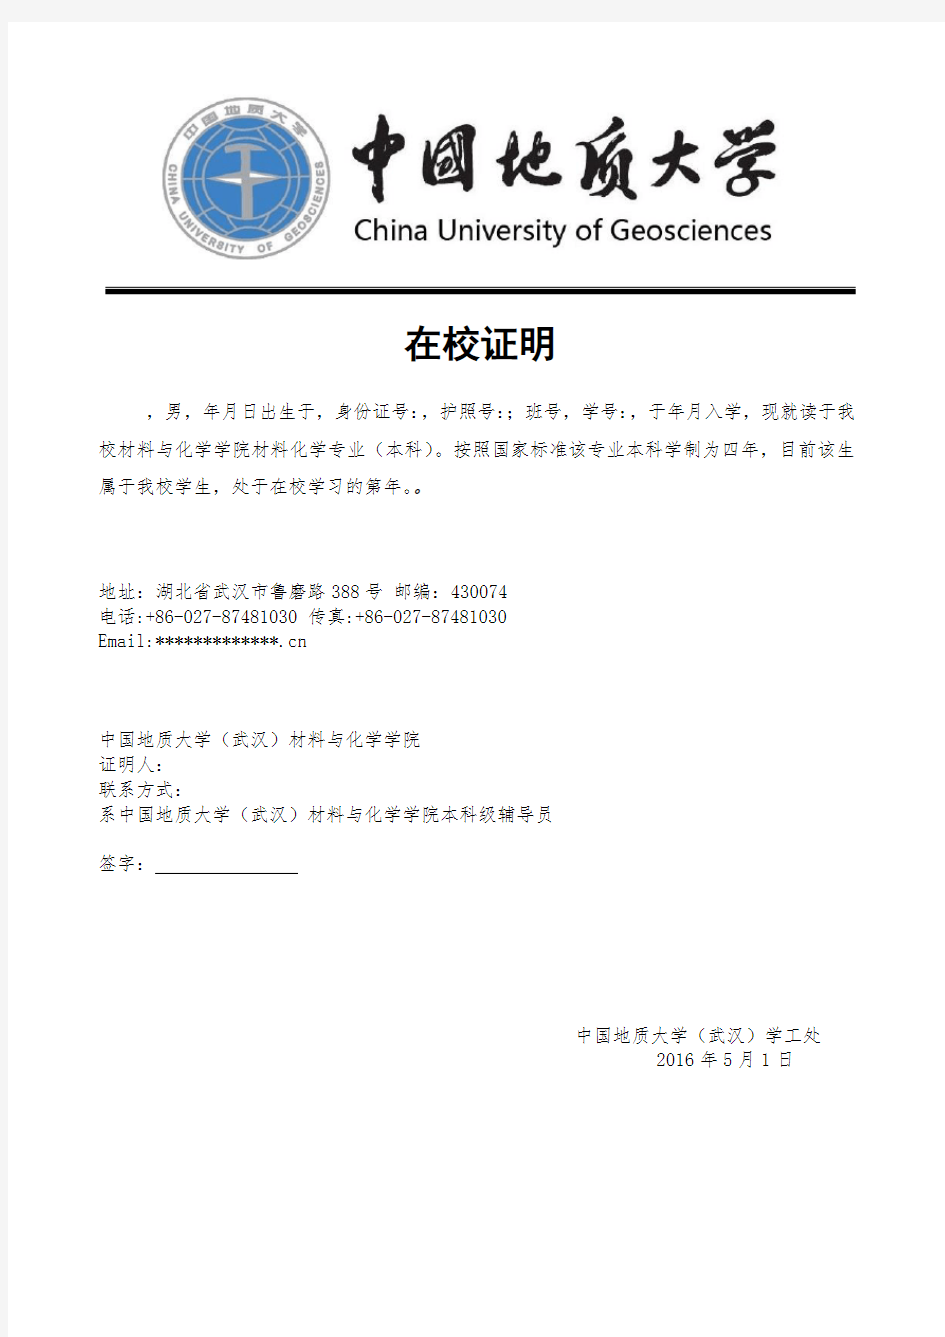 中国地质大学(武汉)在读证明